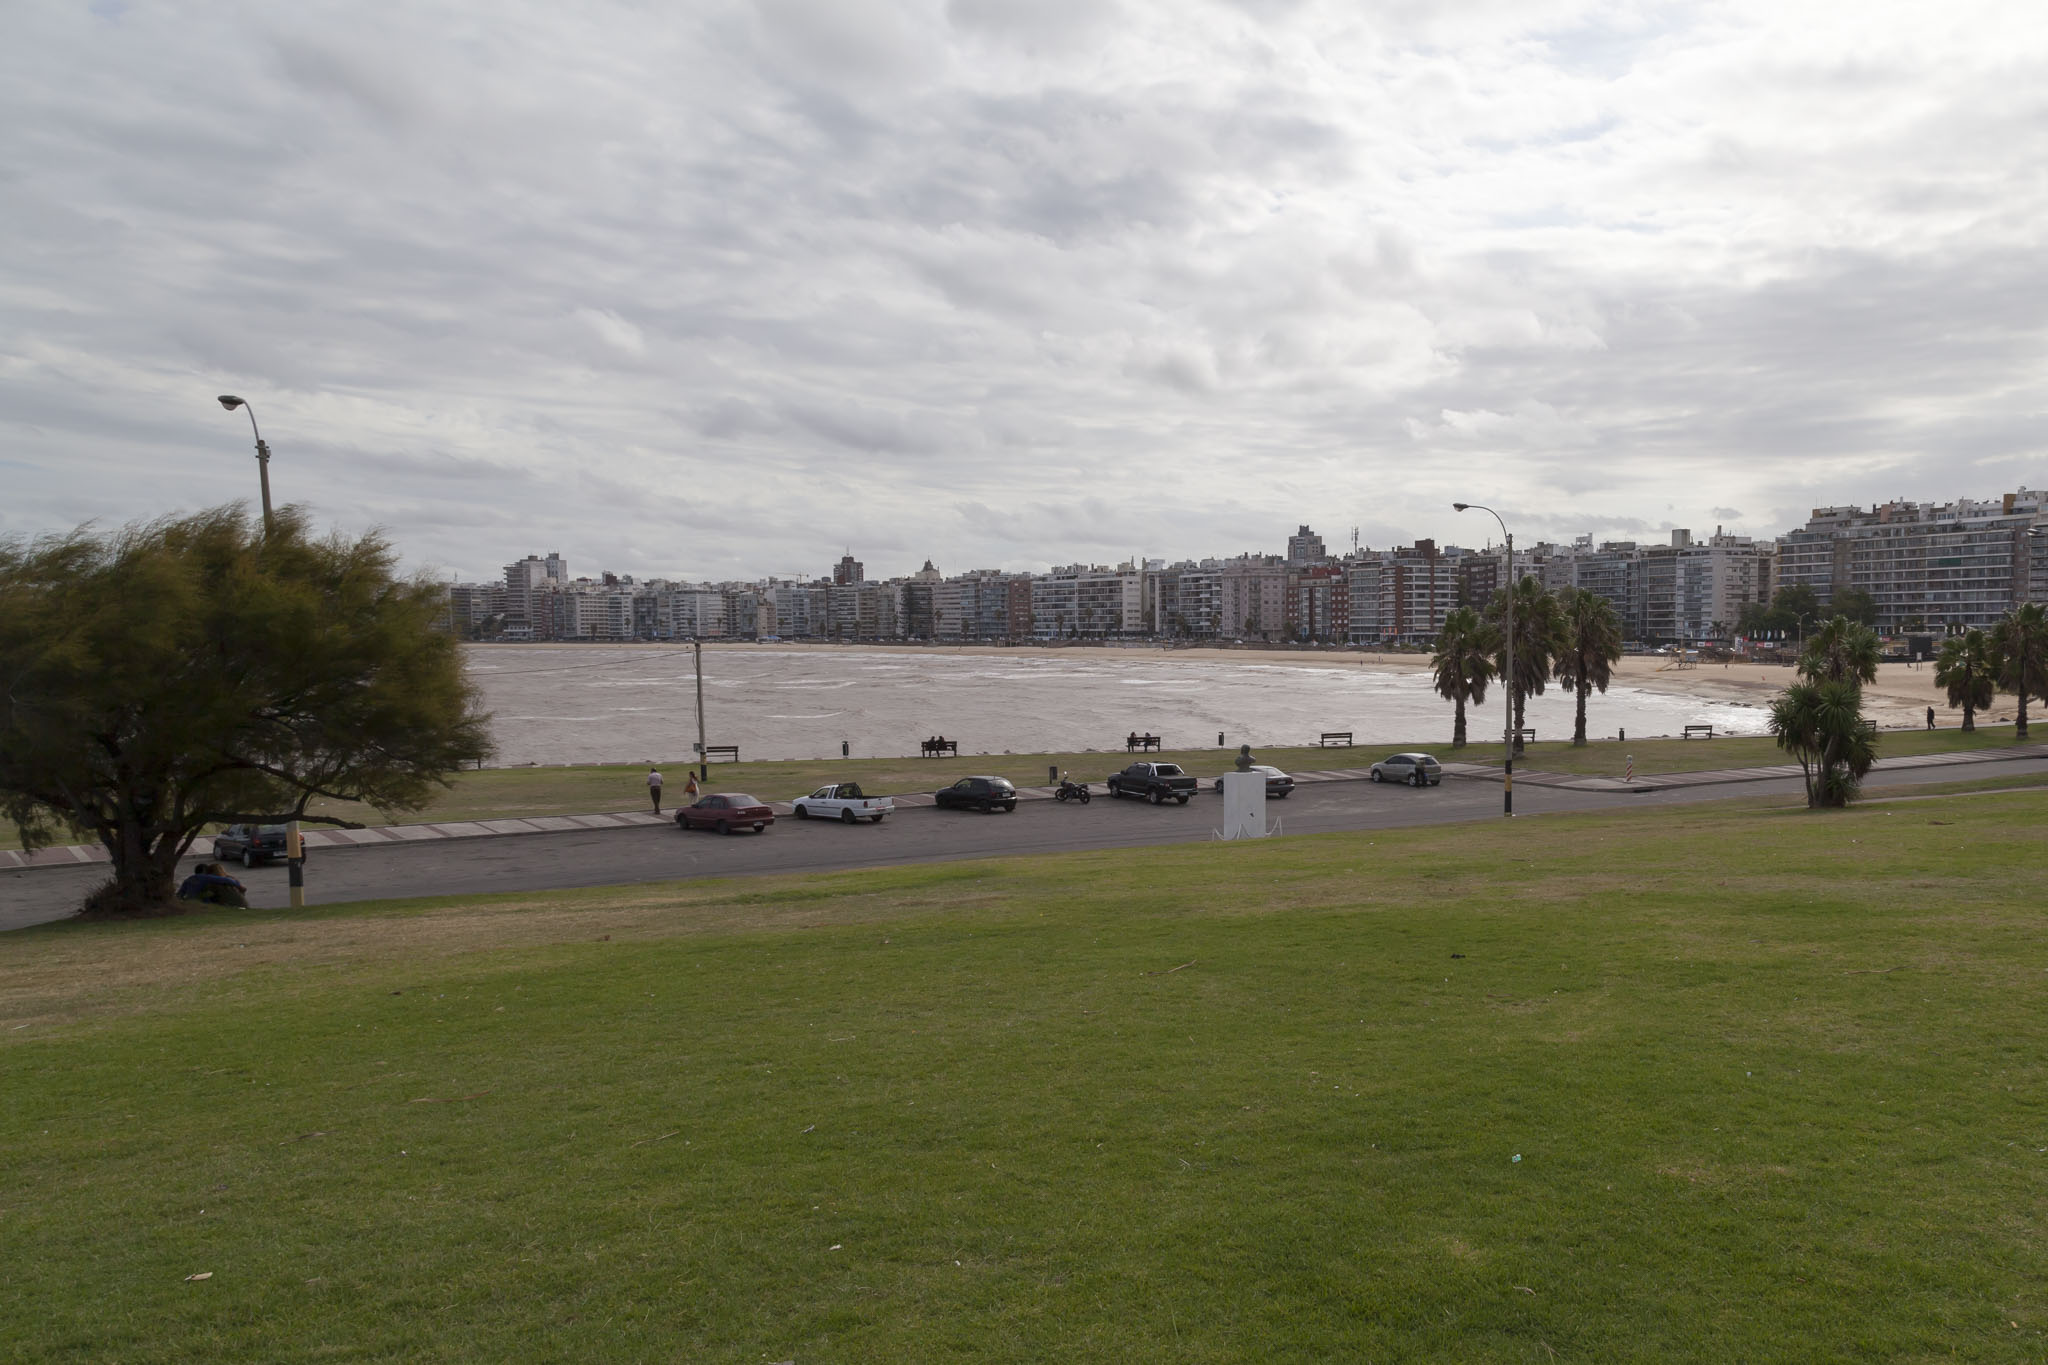 Montevideo Beach